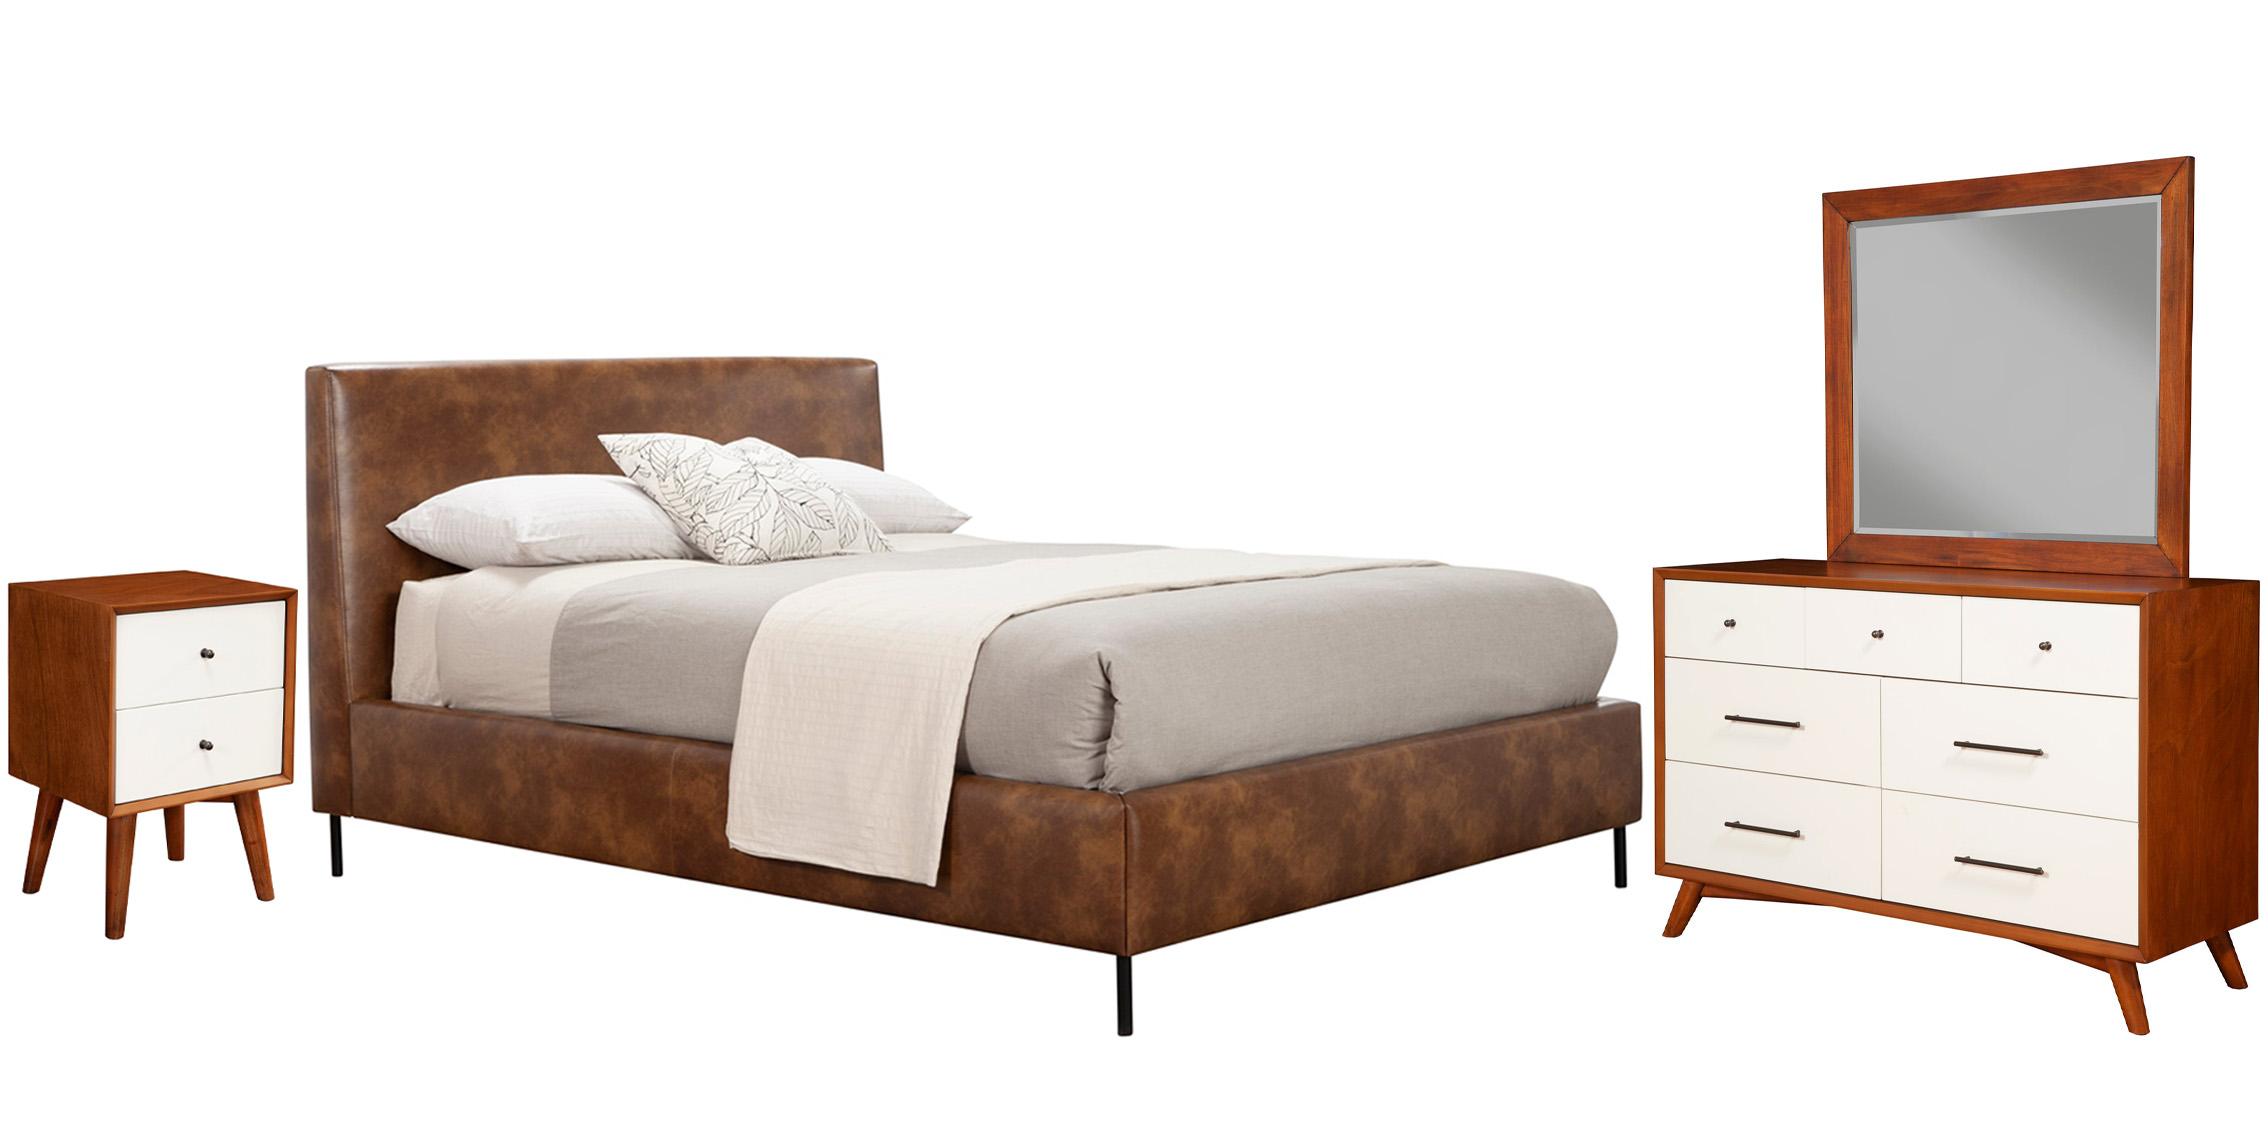 Modern, Rustic Platform Bedroom Set SOPHIA/FLYNN 6902EK-BRN-Set-4 in Brown Faux Leather